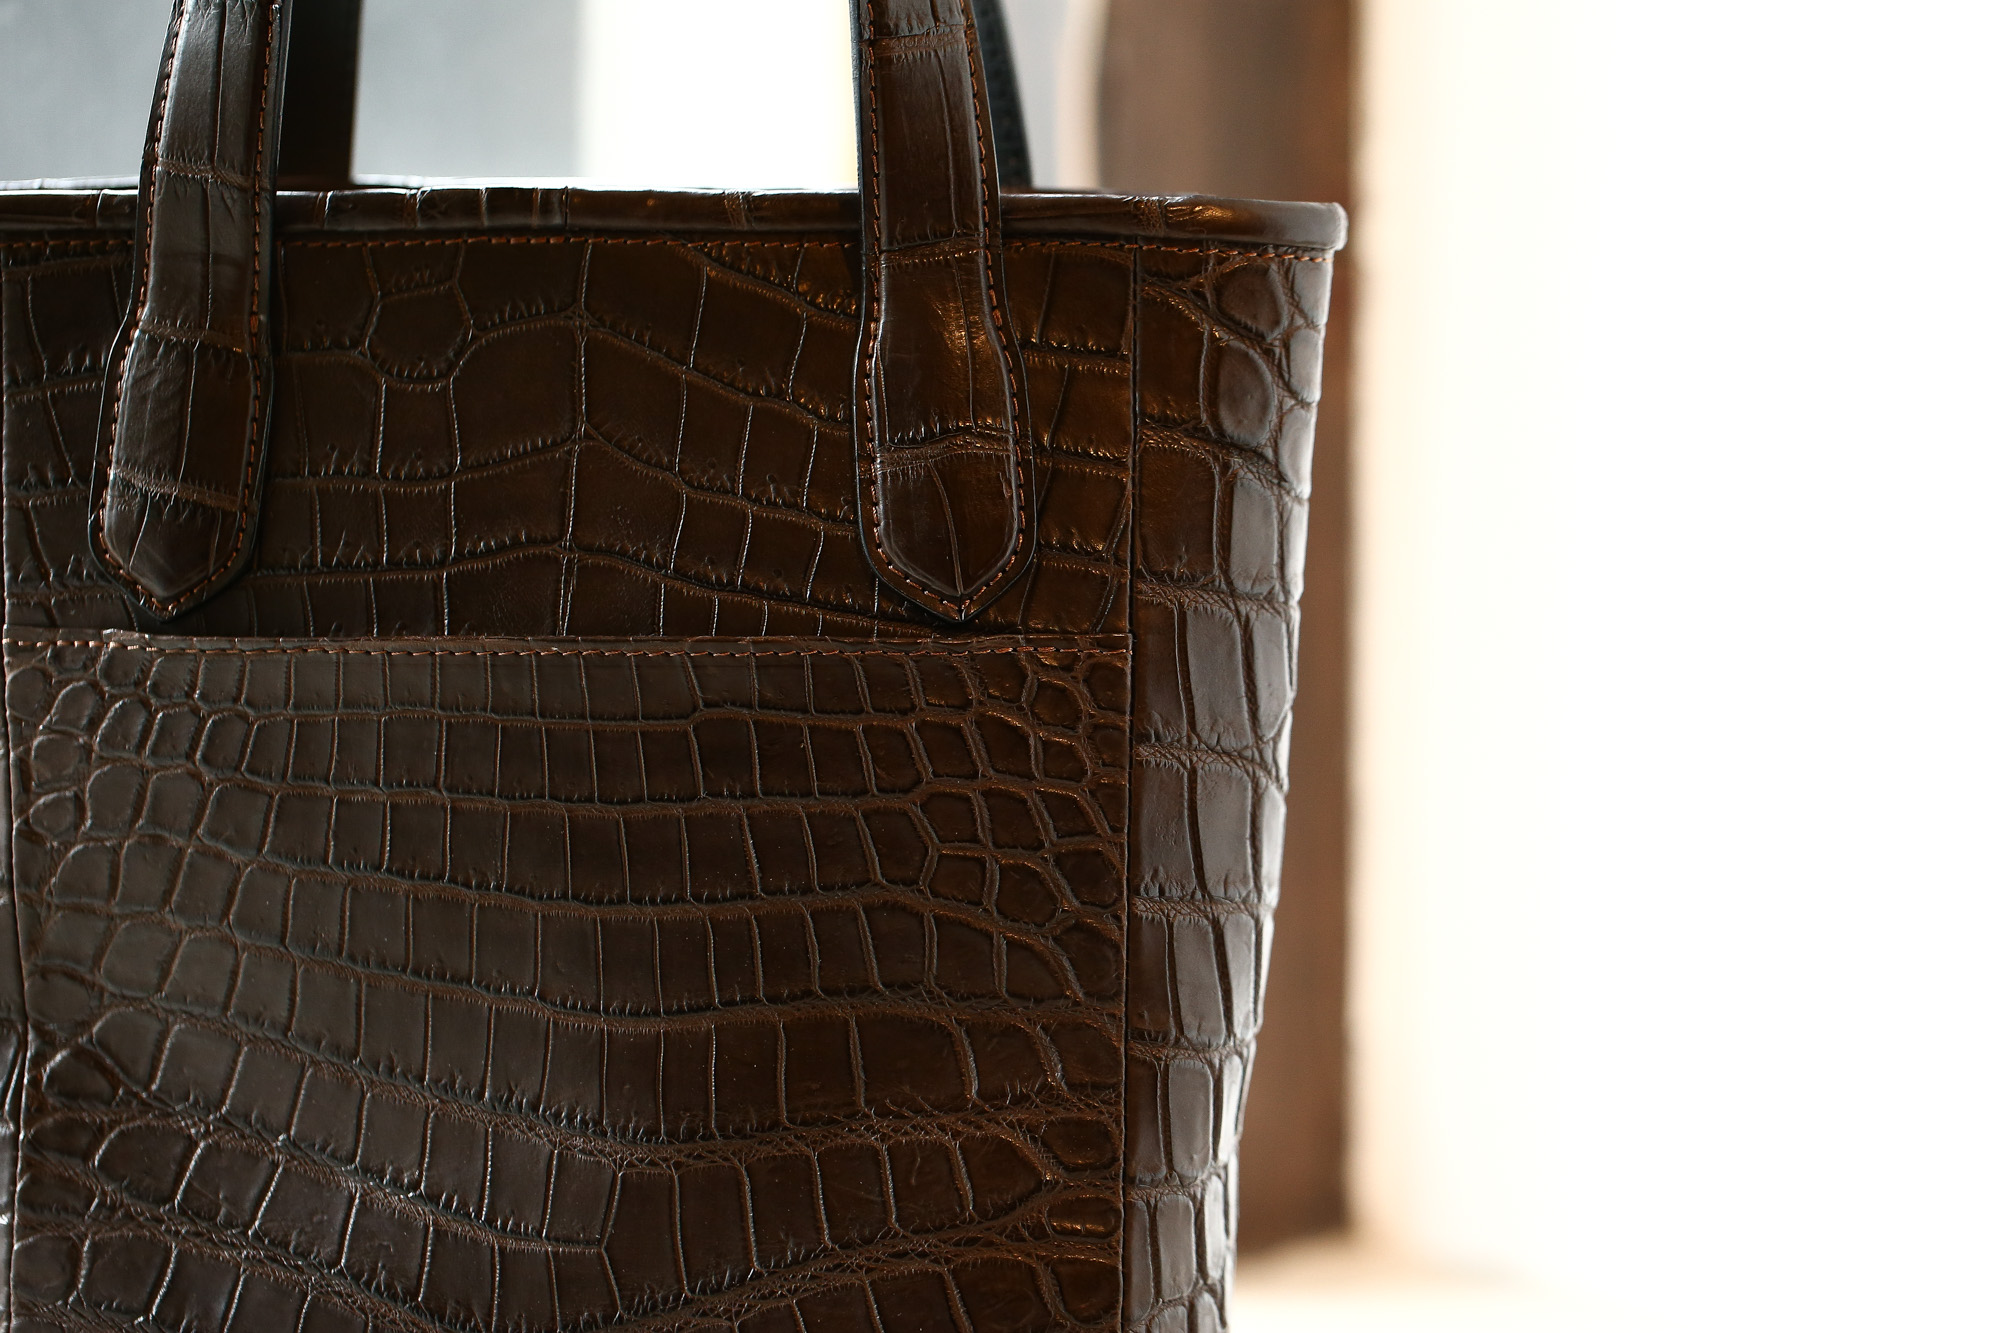 Cisei × 山本製鞄 (シセイ × 山本製鞄) Crocodile Tote Bag Small (クロコダイル トートバッグ スモール) Nile Crocodile Leather (ワニ革) ナイル クロコダイル トート バッグ BLACK(ブラック),NAVY(ネイビー),BROWN(ブラウン) Made in Japan (日本製)   cisei yamamotoseiho トートバック クロコ 愛知 名古屋 Alto e Diritto アルト エ デリット